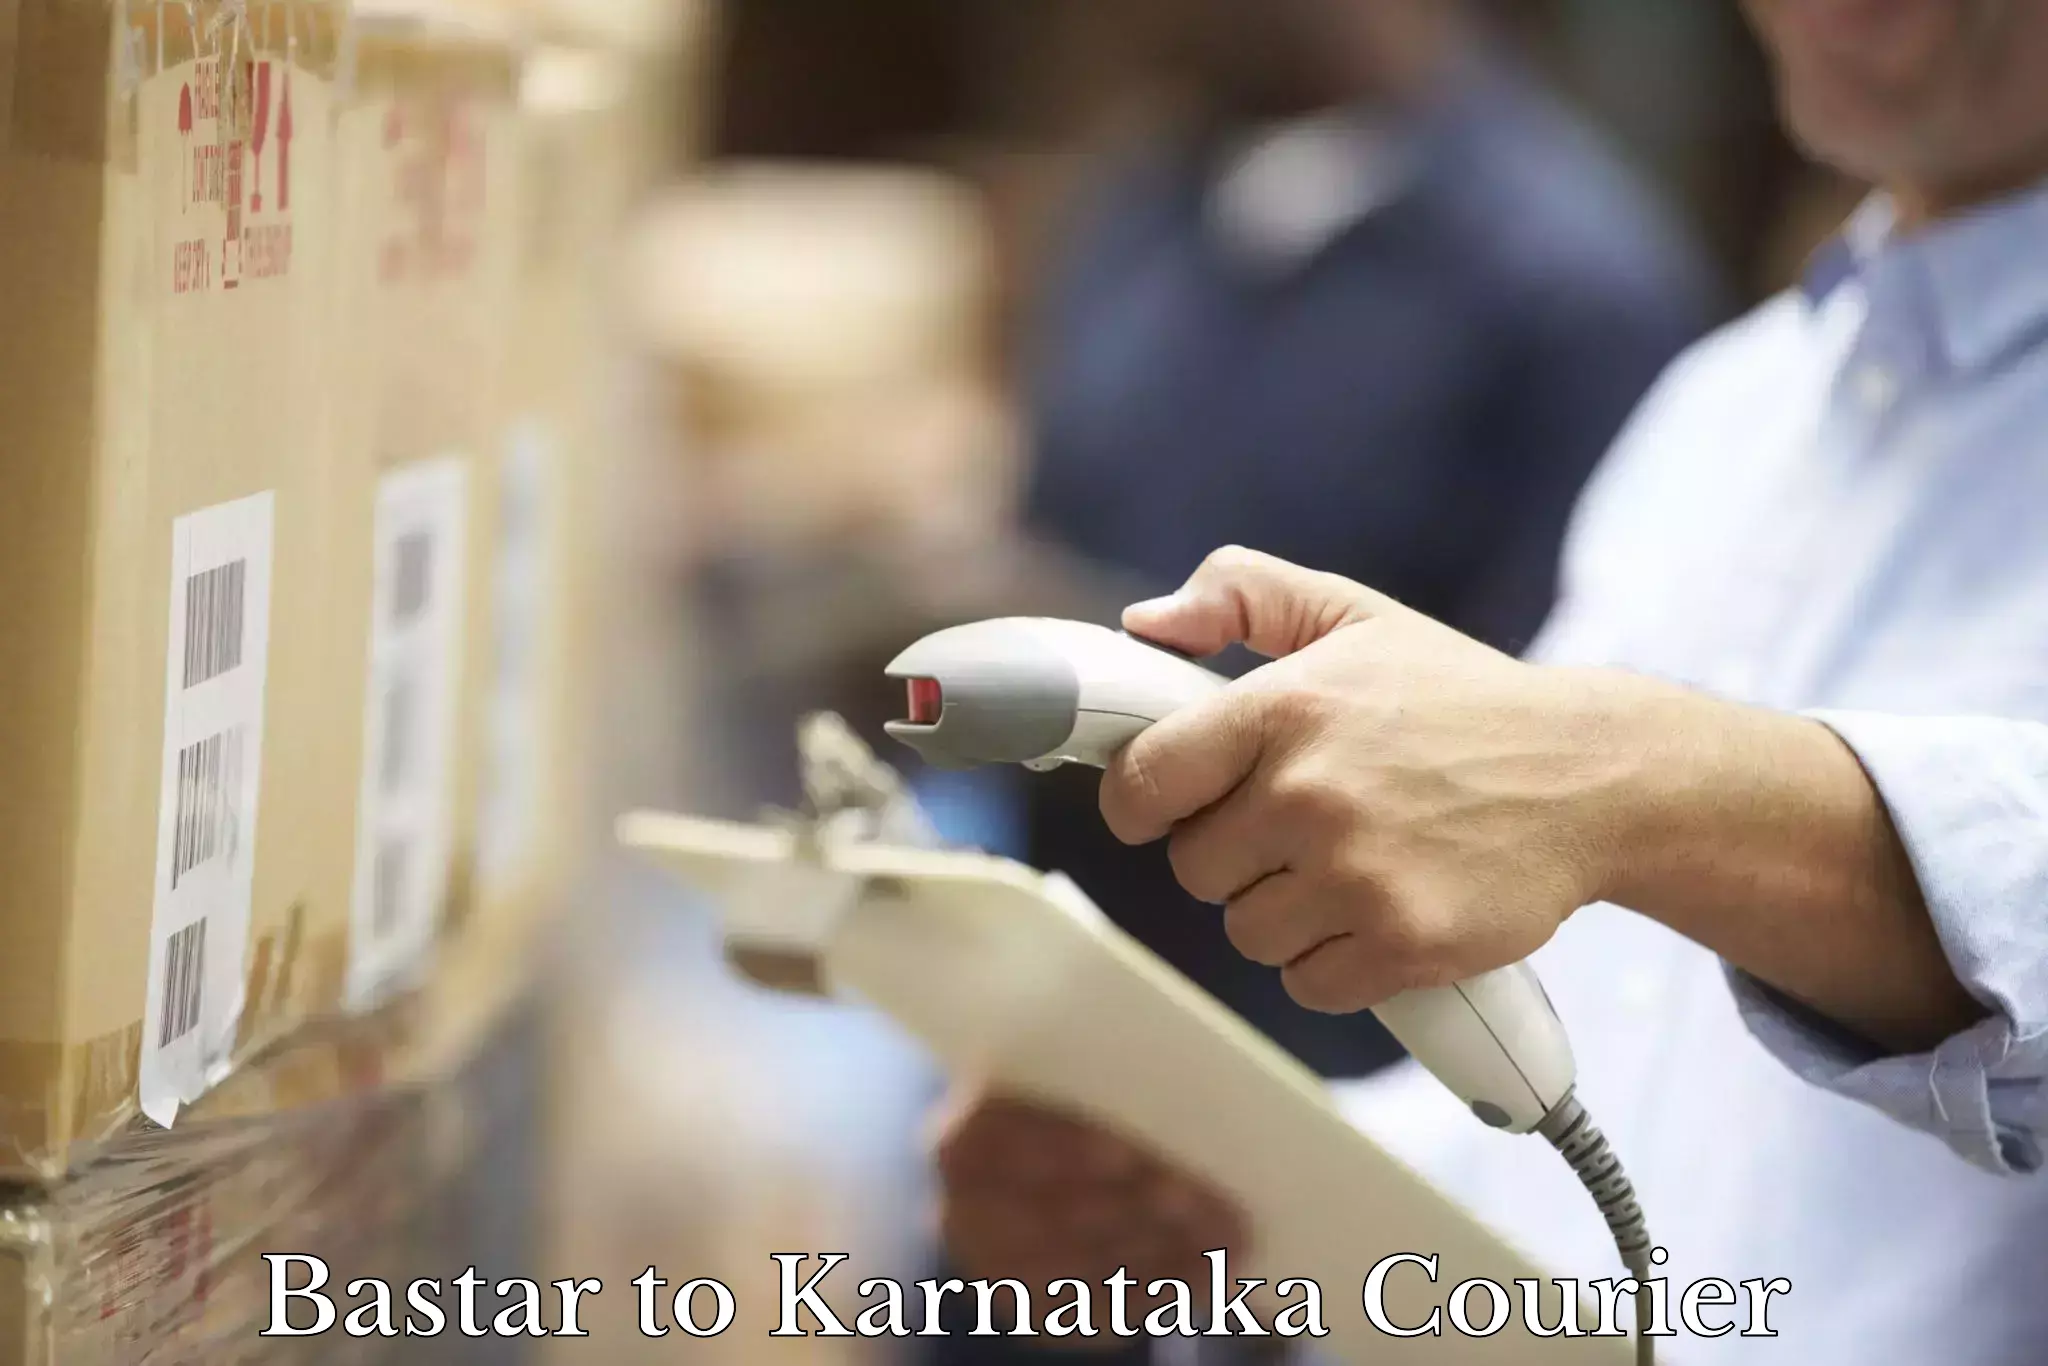 Express logistics providers Bastar to Yenepoya Mangalore